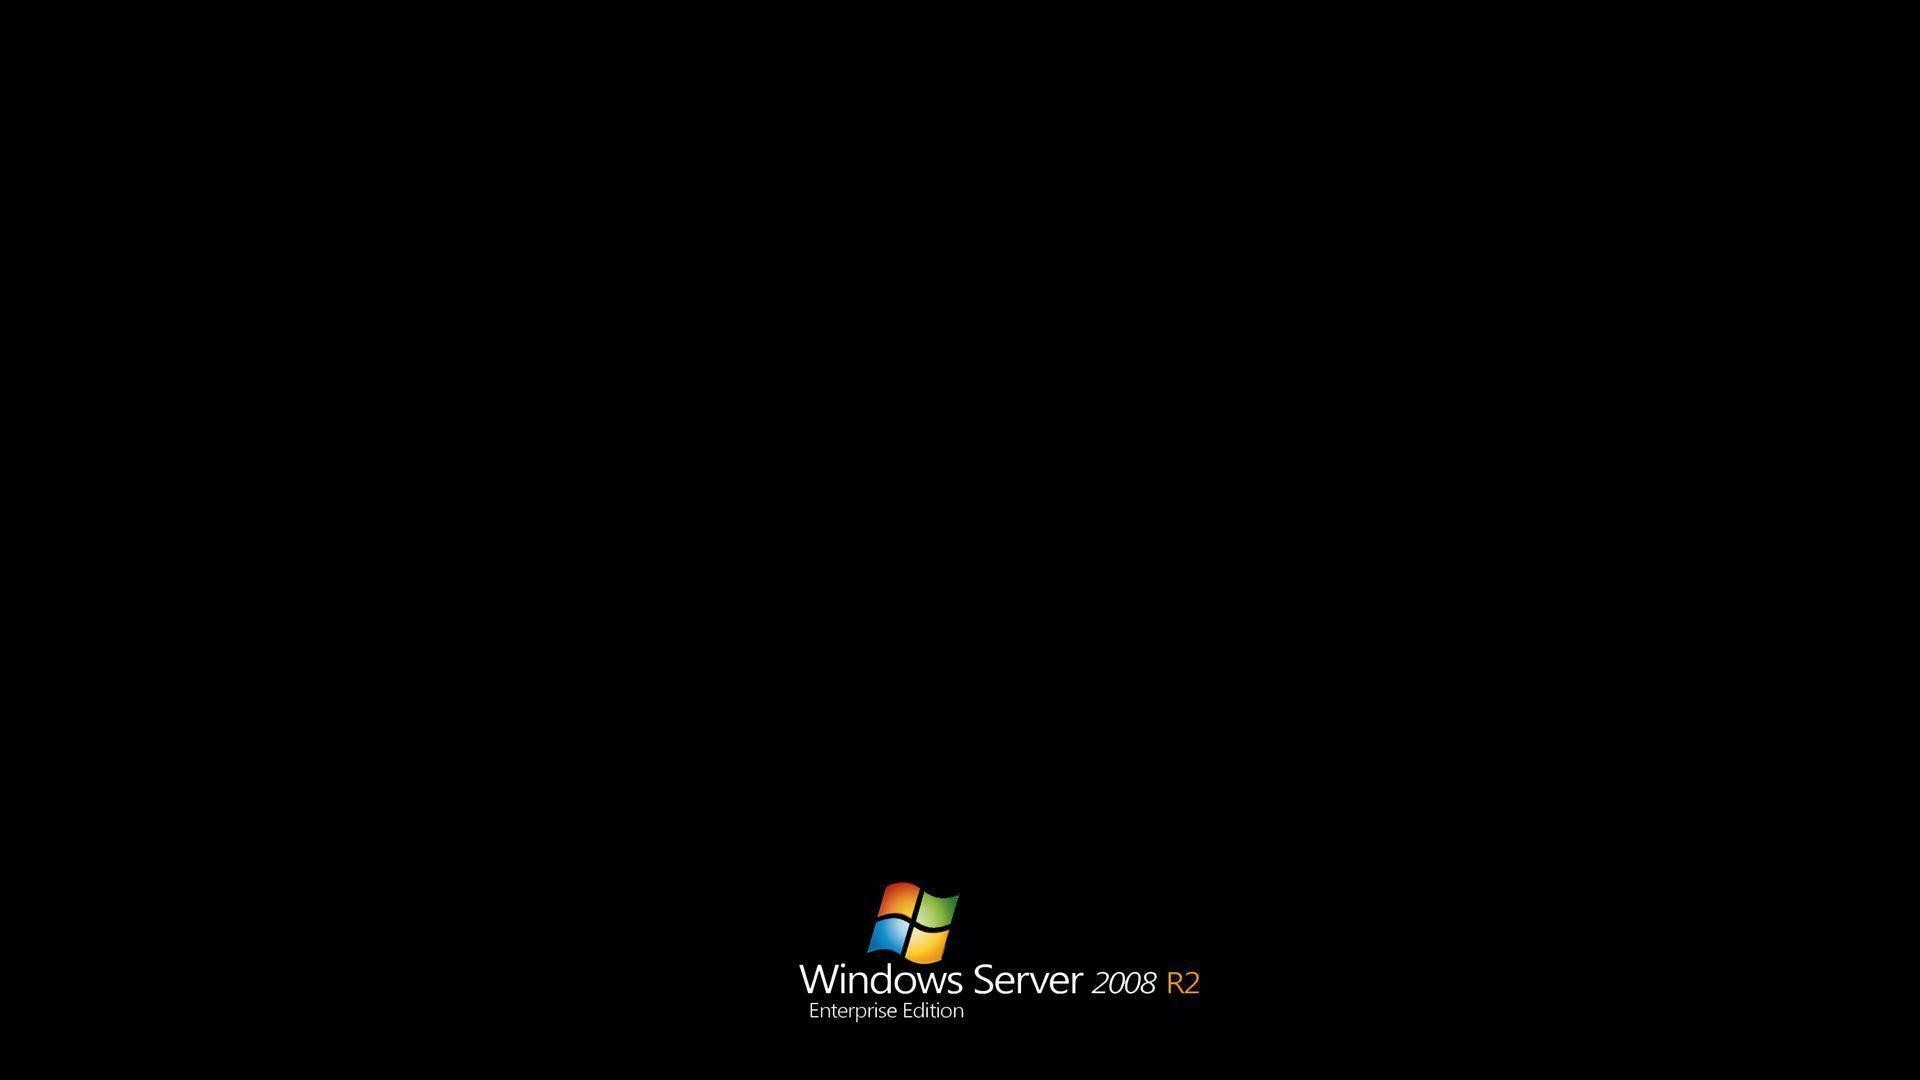 1920x1080 Windows Server 2008 R2 HD Wallpaper | Wallpapers | Pinterest .